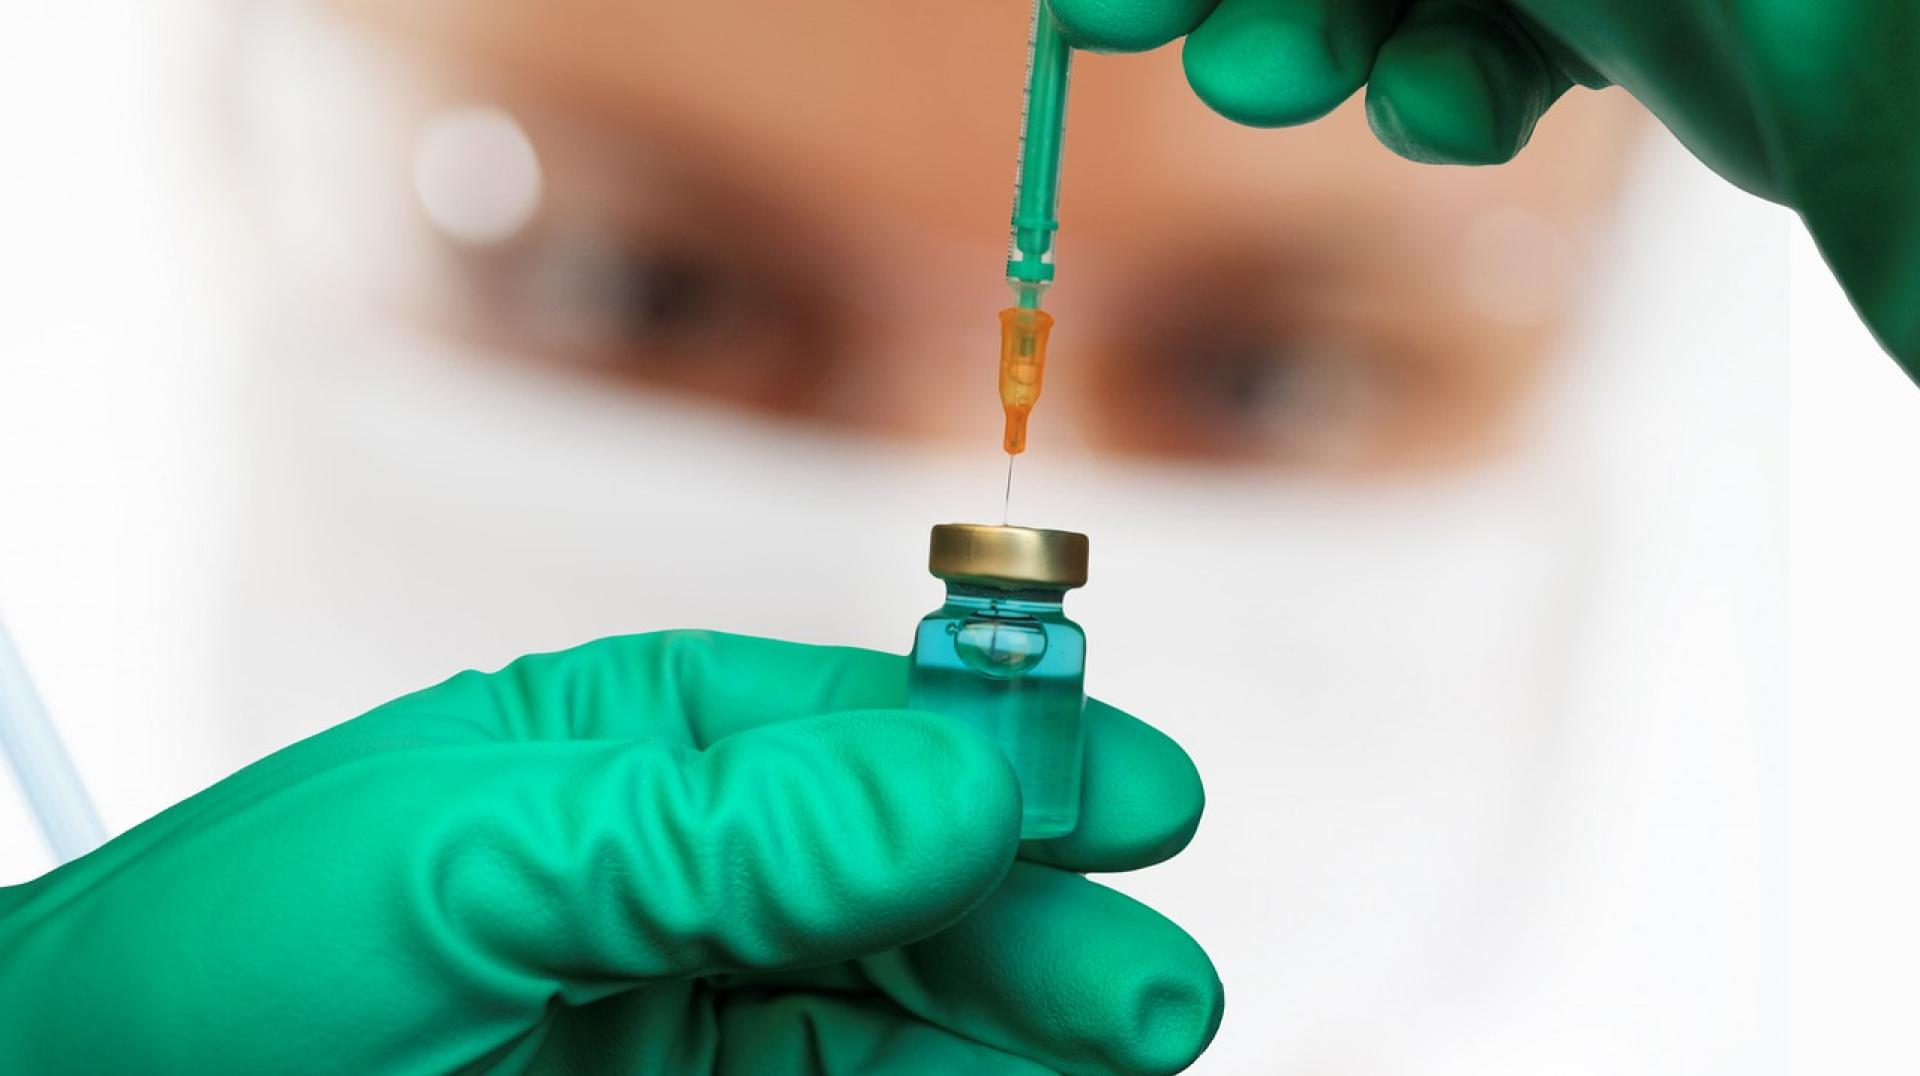 Bezpłatne szczepienia przeciw HPV w wąbrzeskim szpitalu